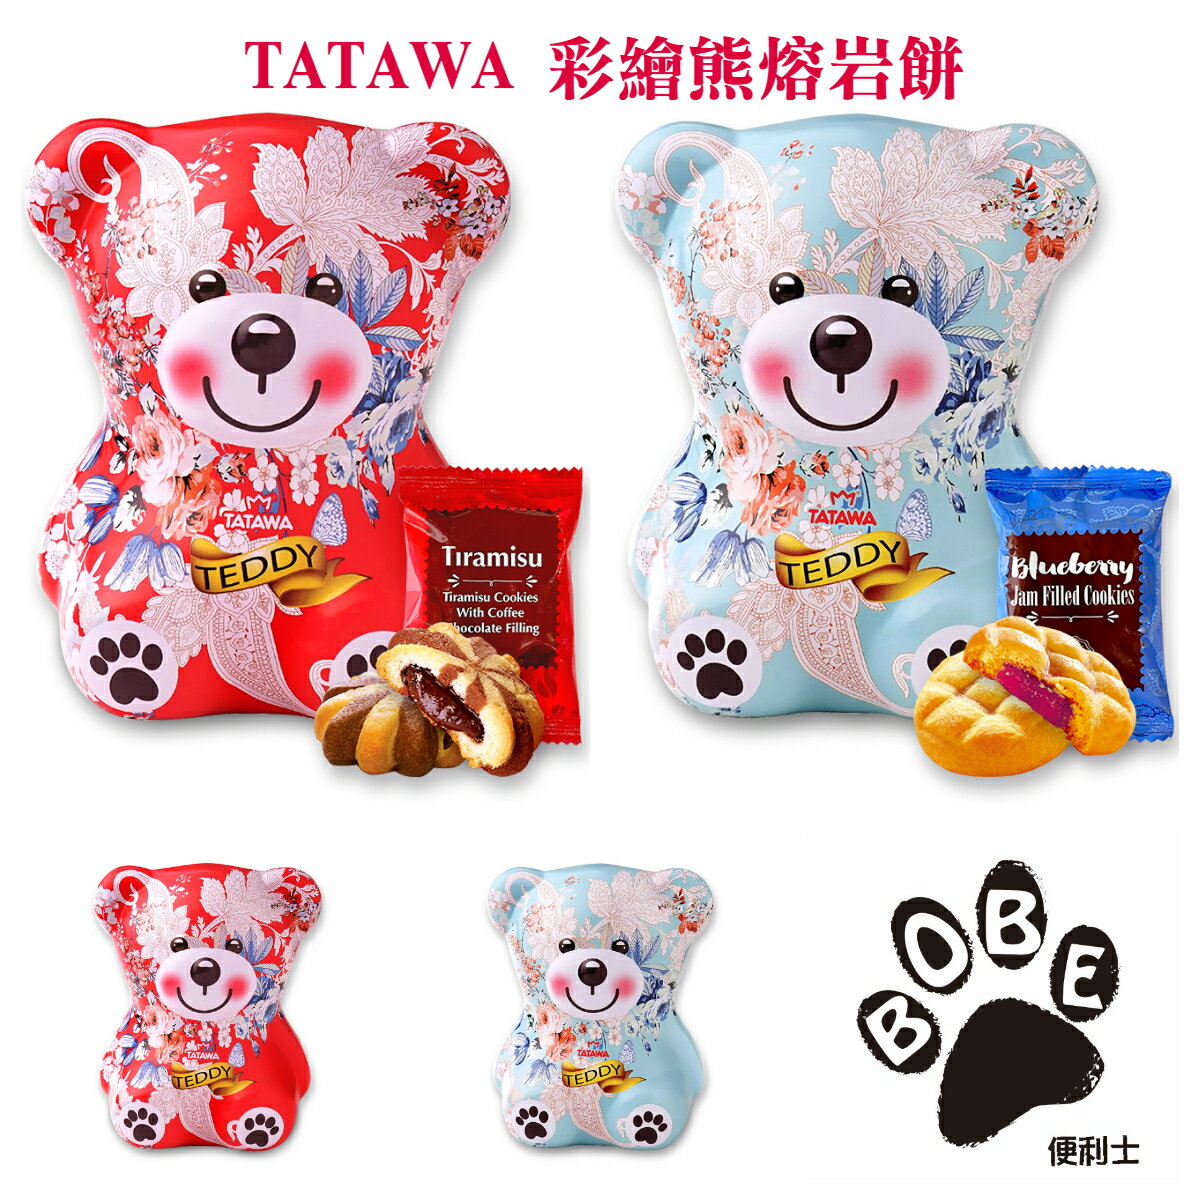 【BOBE便利士】馬來西亞 TATAWA 彩繪熊熔岩餅